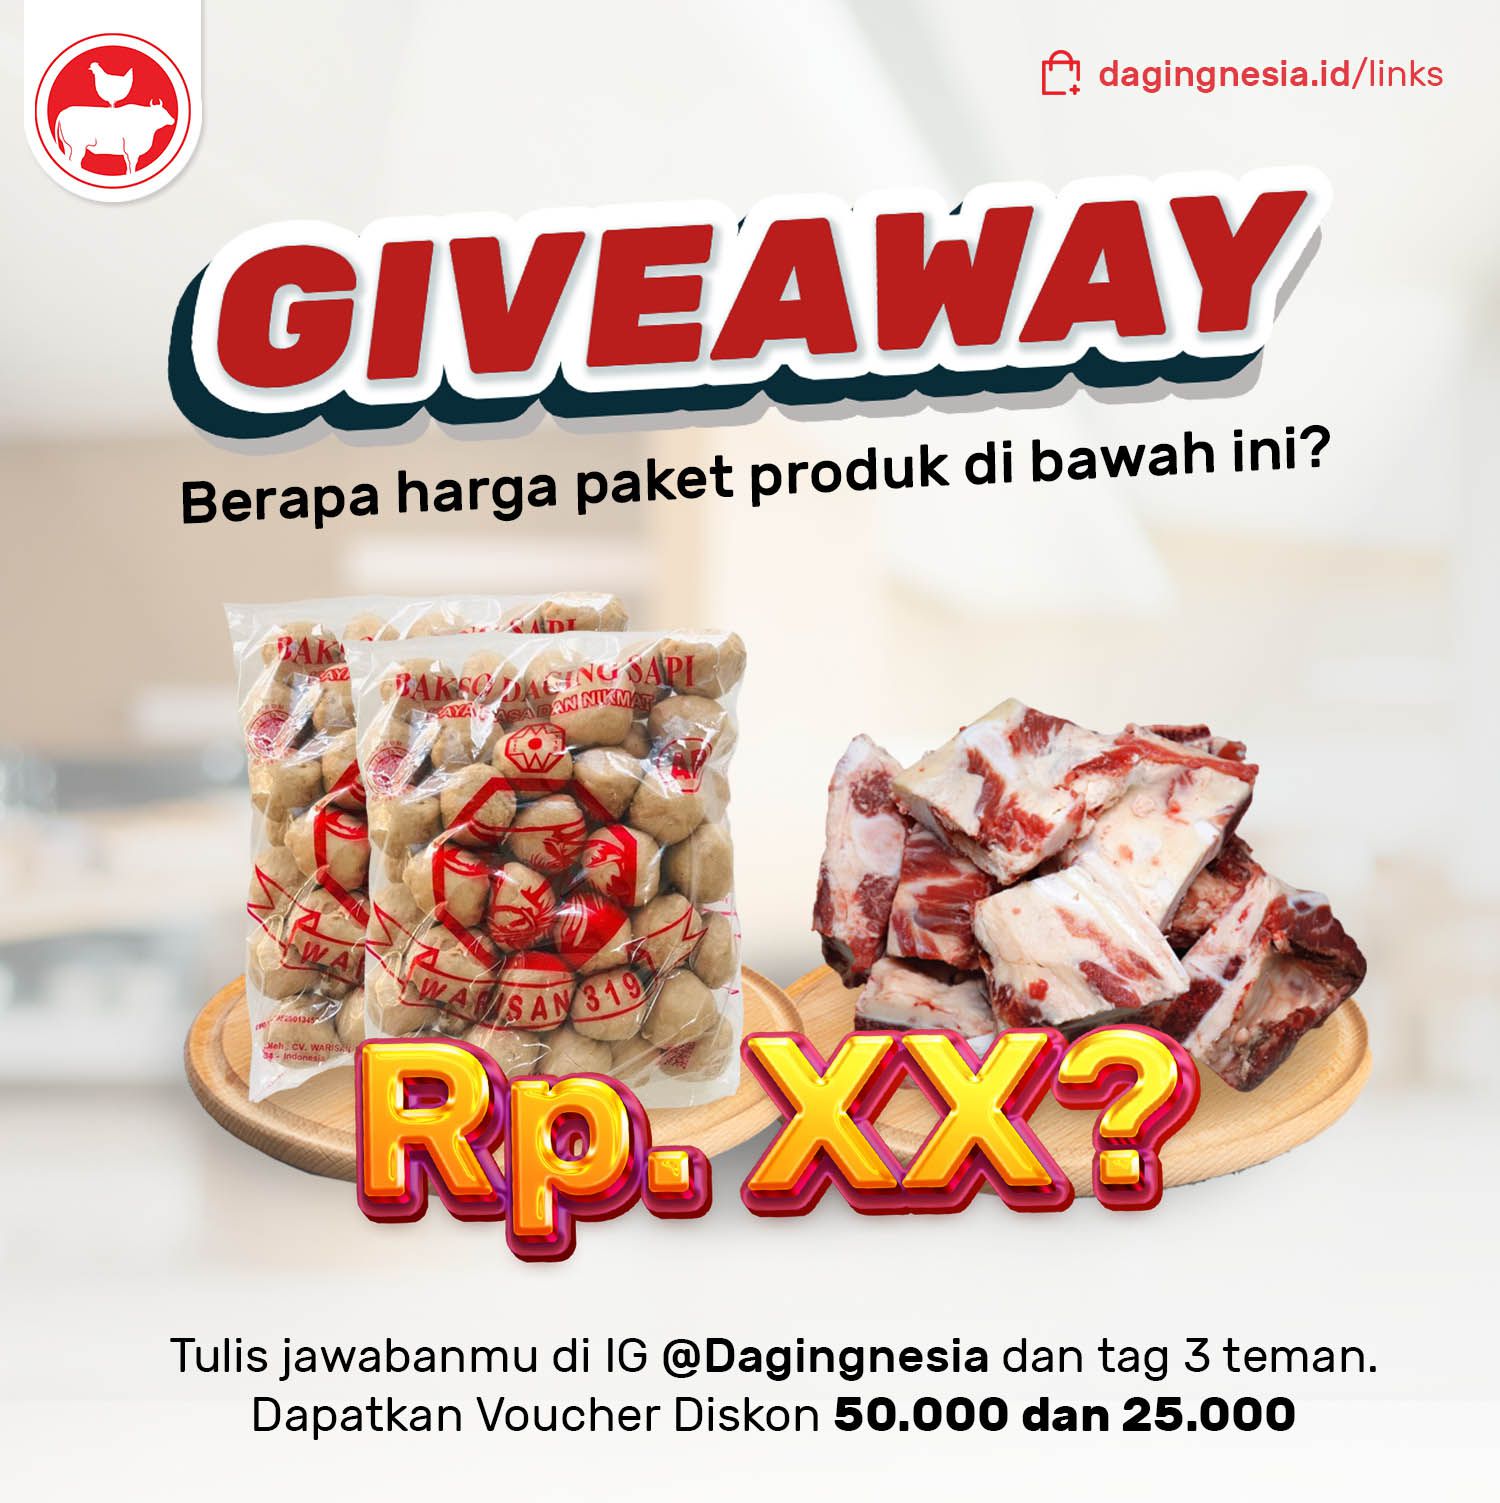 Giveaway Spesial Bersama Dagingnesia!